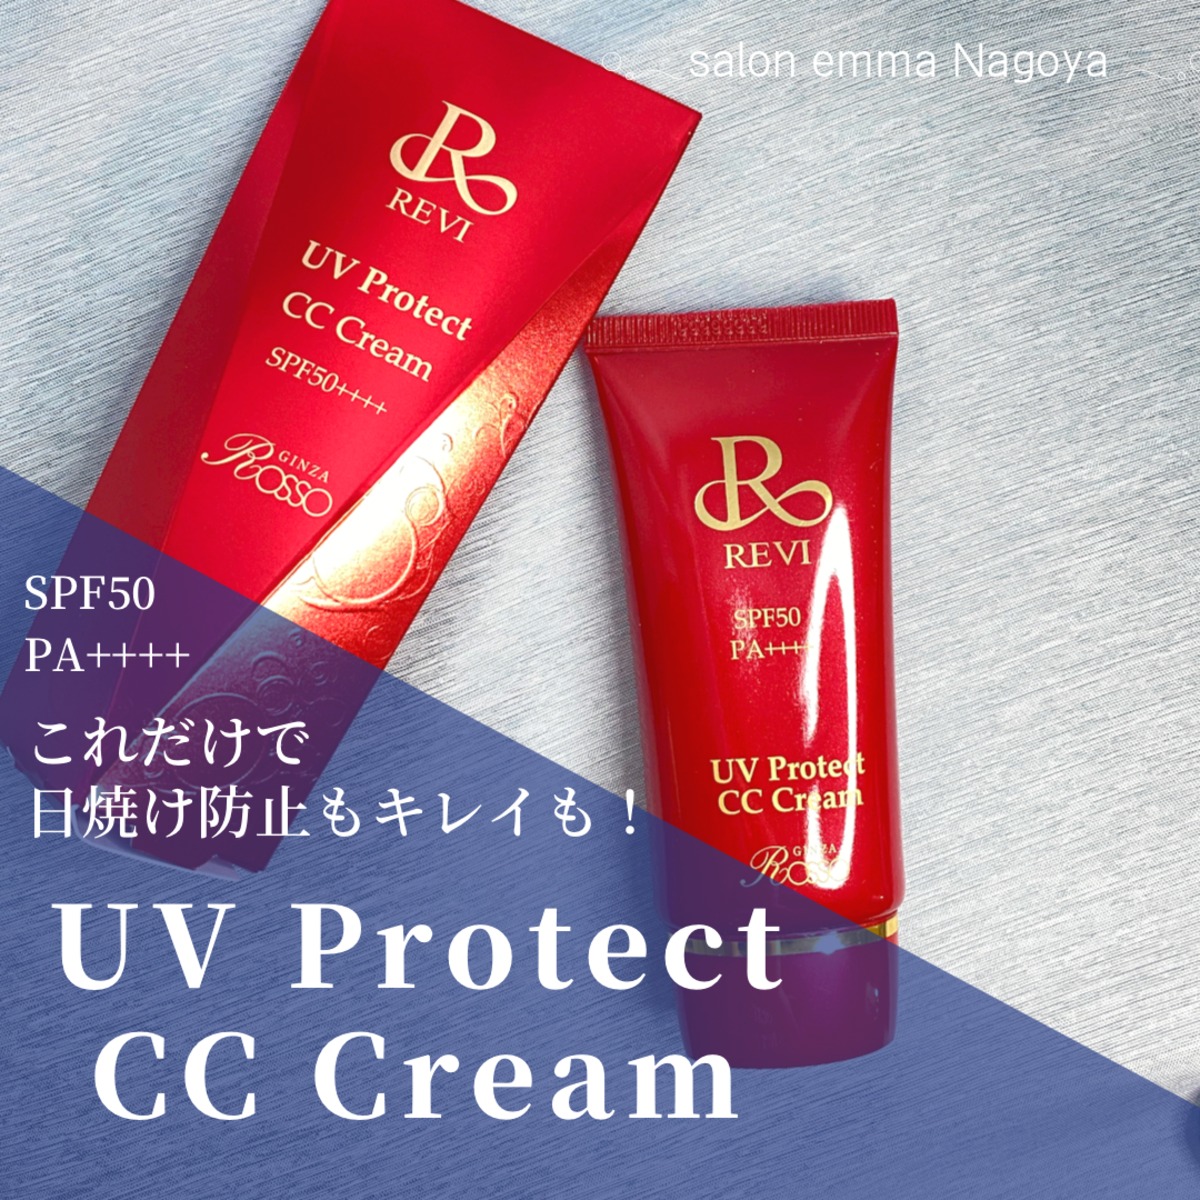 REVI ルヴィ UVプロテクト クリーム 35g 銀座ロッソ 日焼け止めコラーゲン